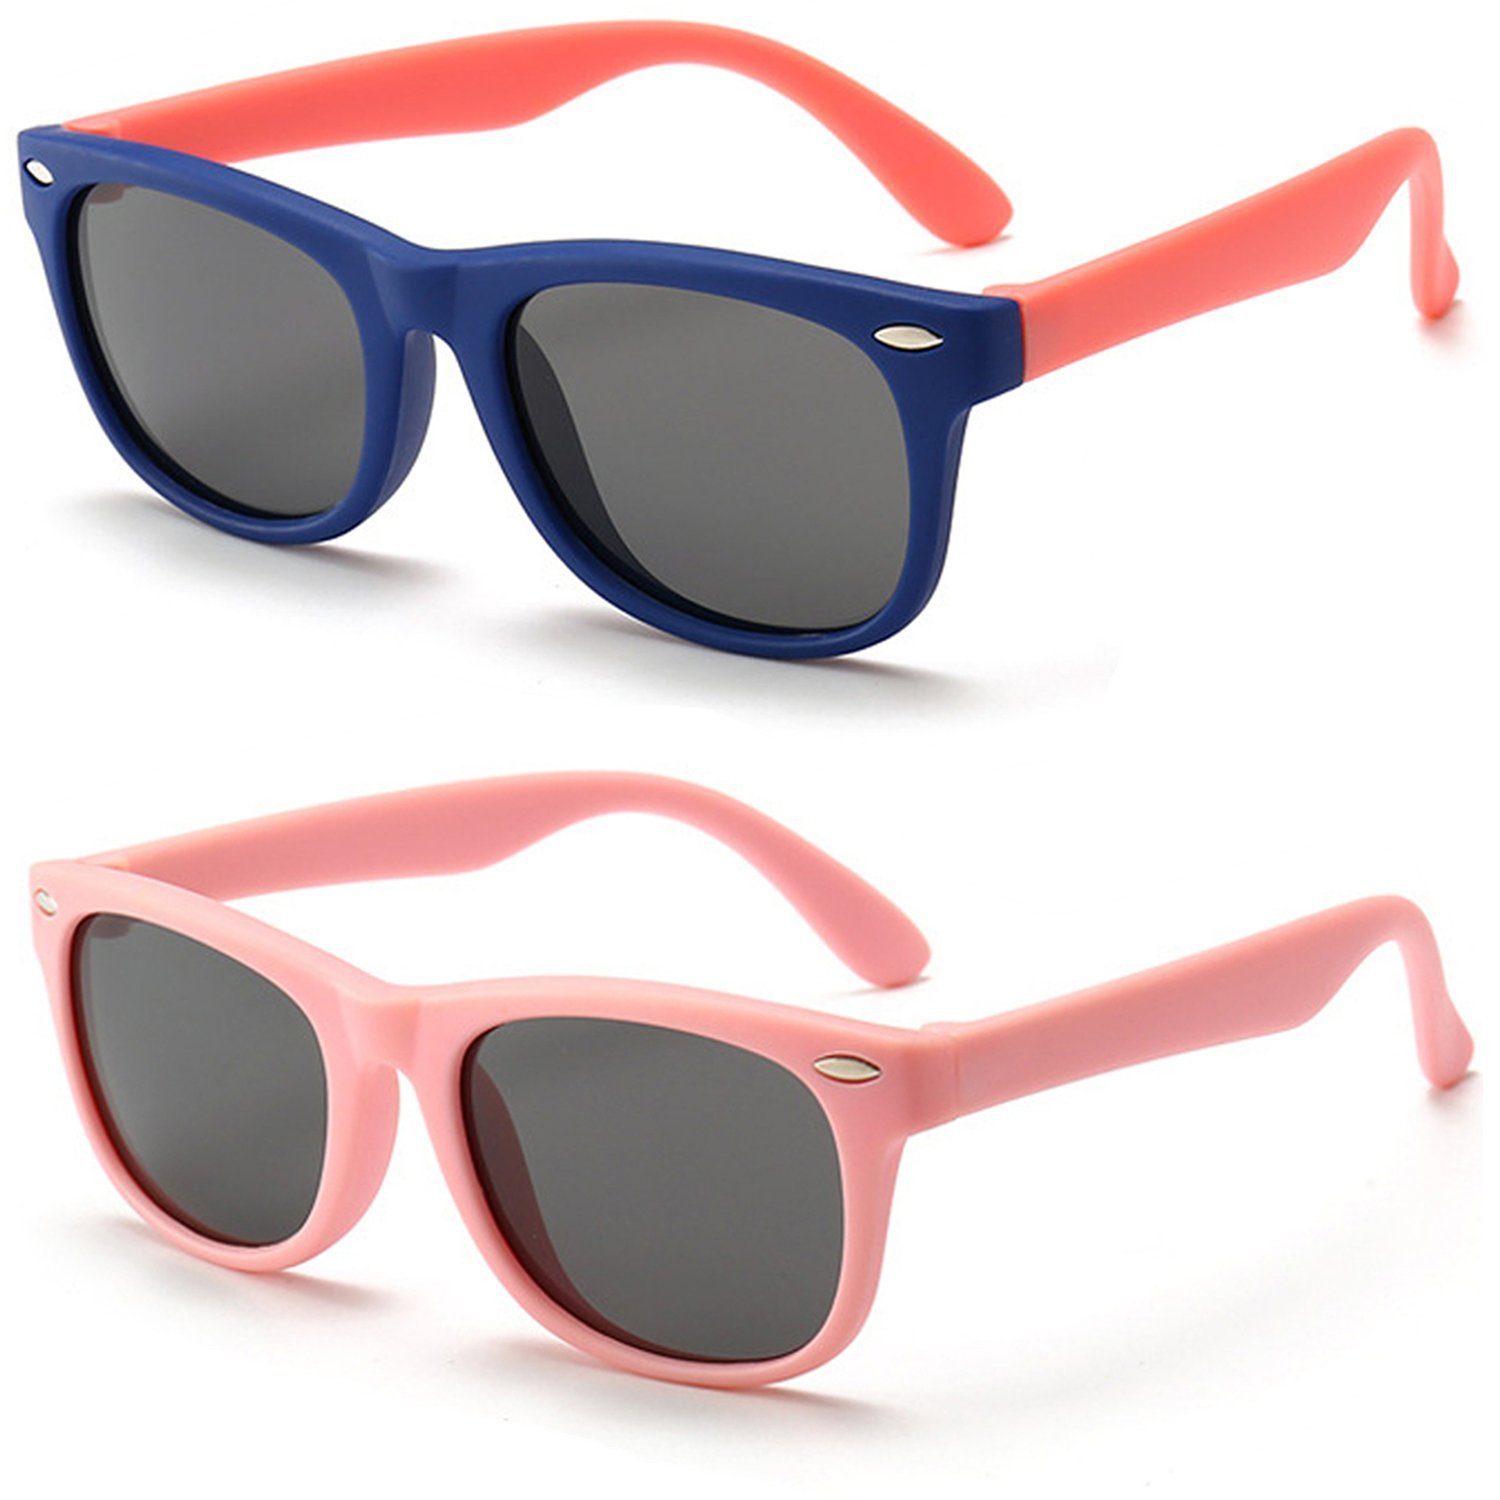 Jungen Brille Kinder Dunkelblau+Rosa UV400 Olotos Gummi für Mädchen Sonnenbrille Schutz 100% Sonnenbrille